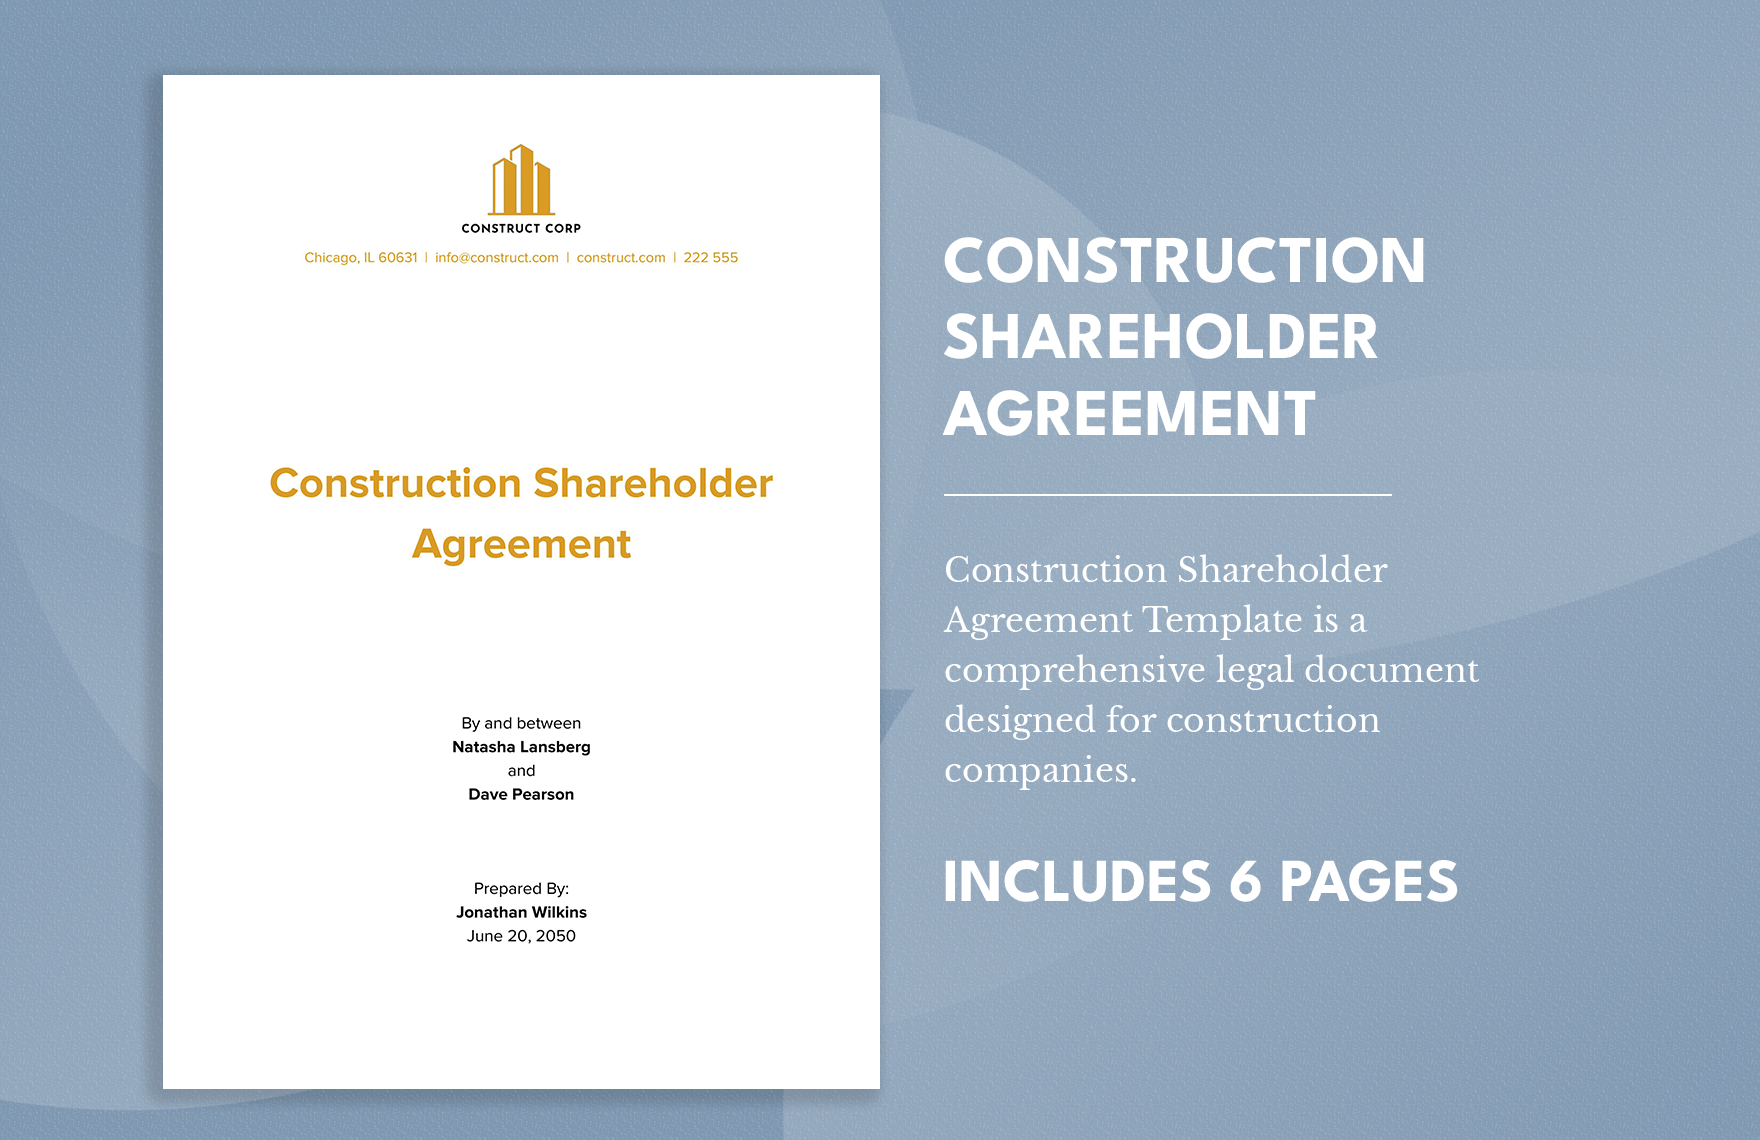 Construction Shareholder Agreement